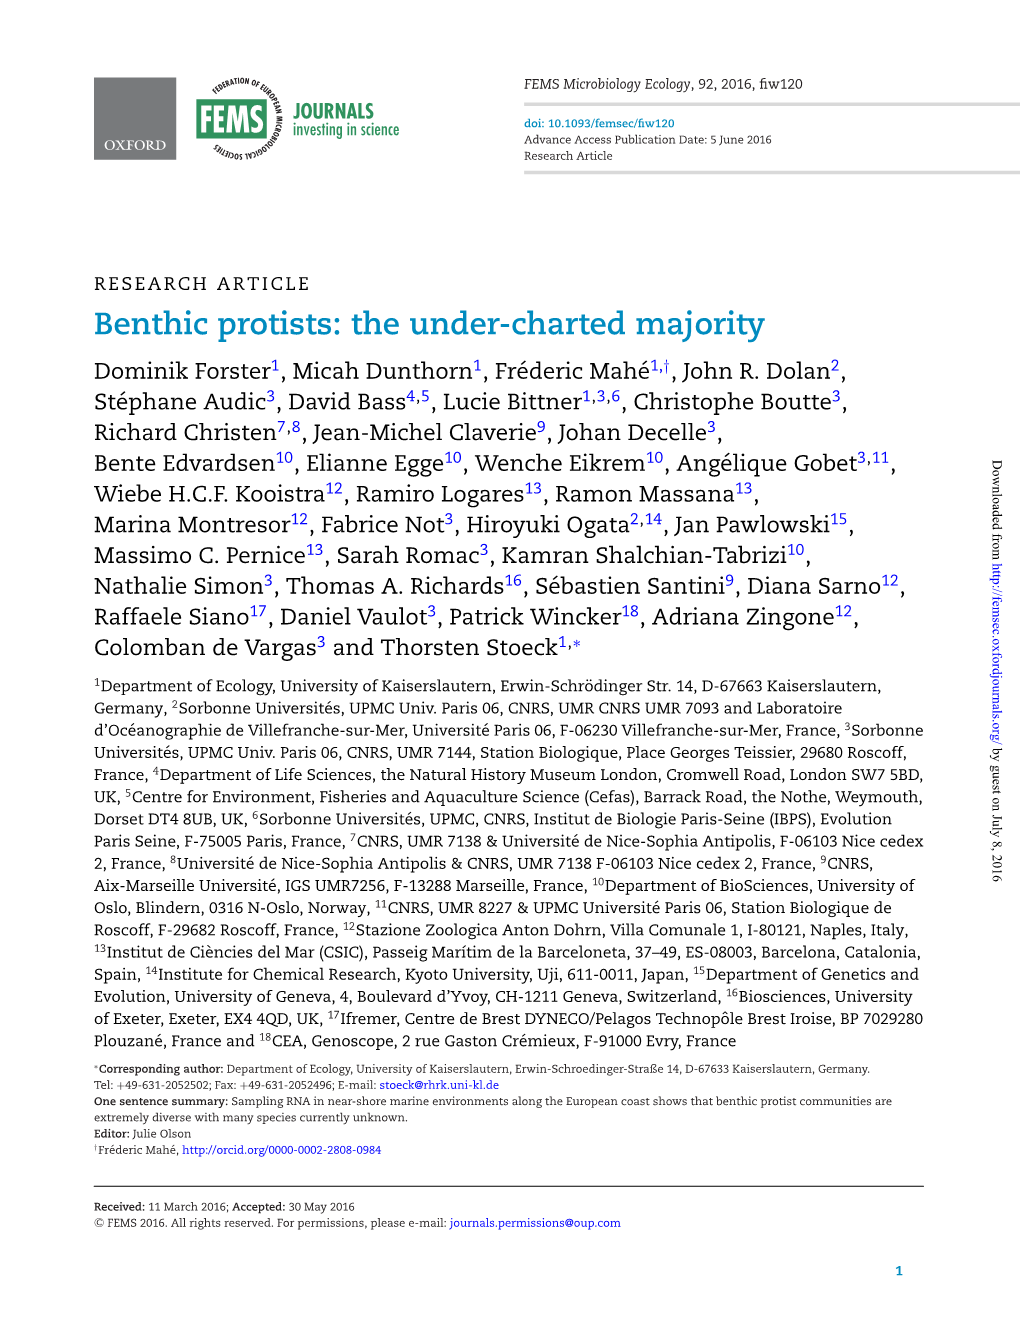 Benthic Protists